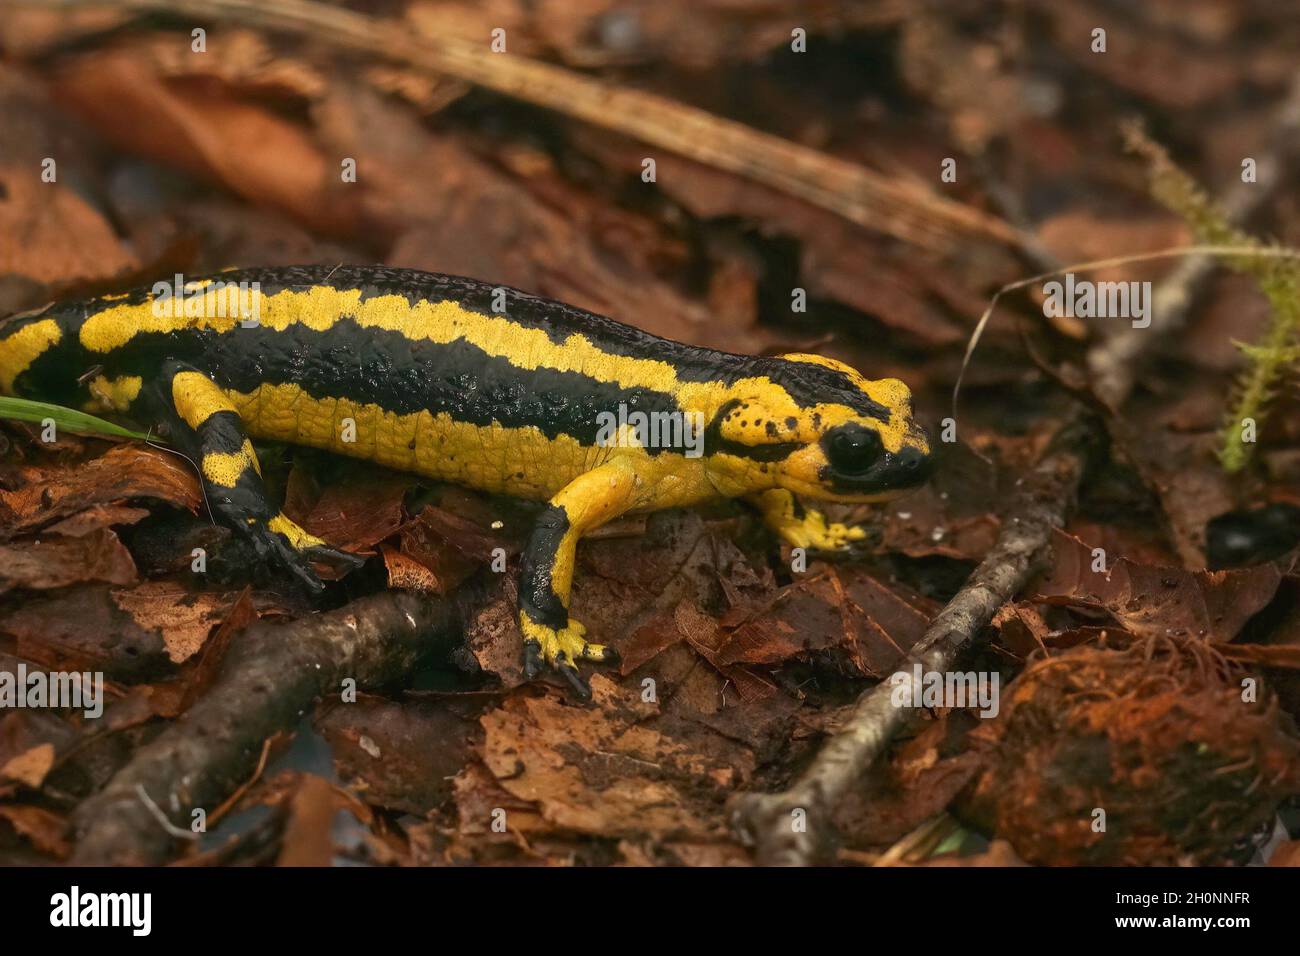 Closeup on the Iberian live bearing fire salamander, Salamandra Stock Photo